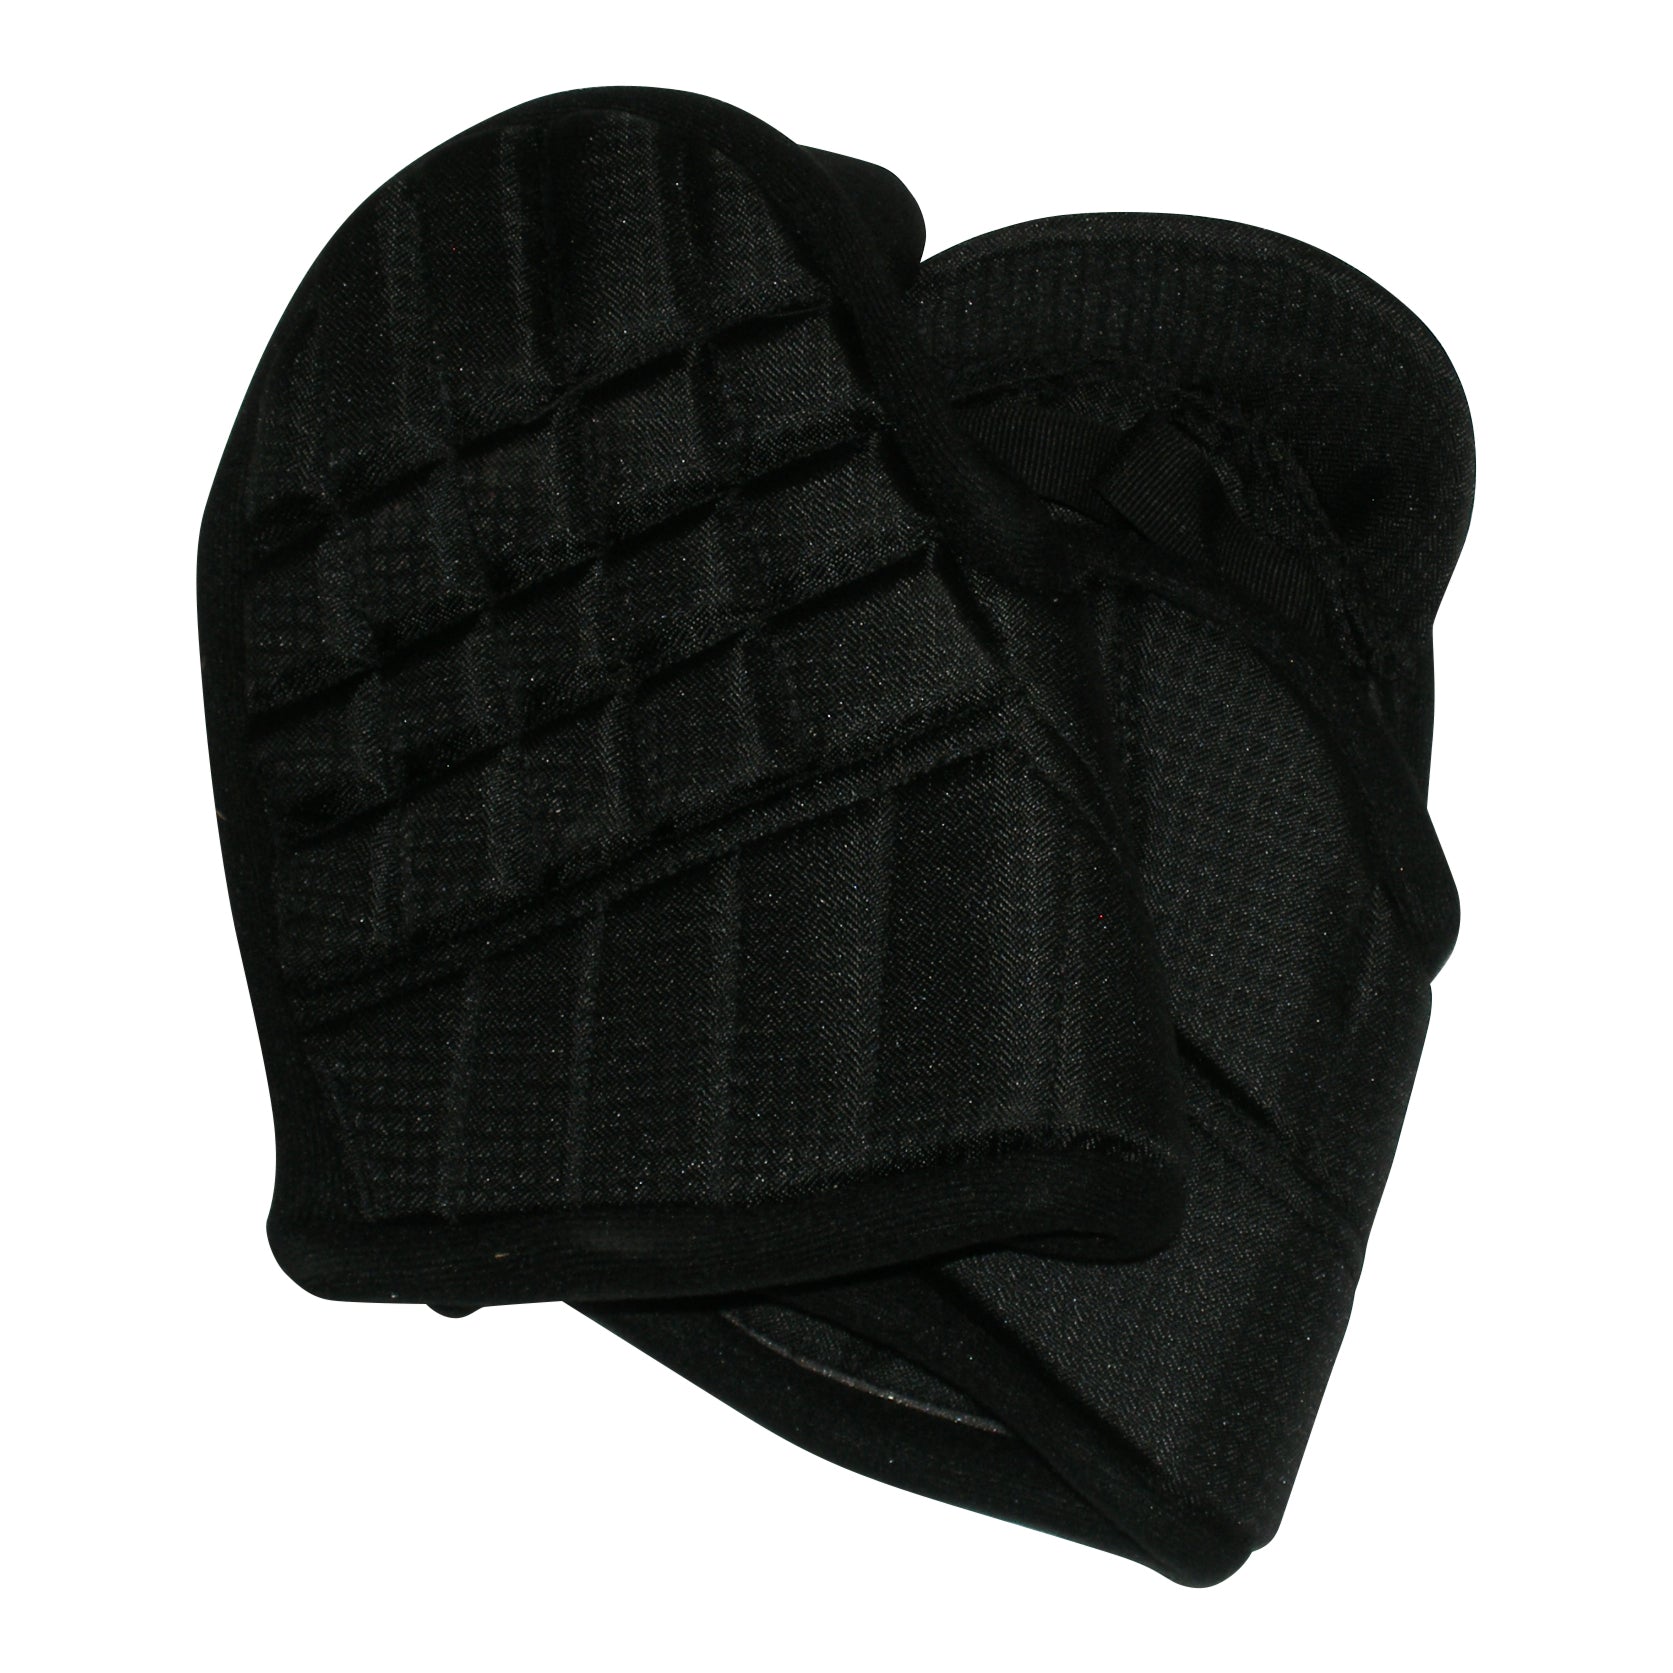 Escrima Kali Arnis Stick Sparring Gloves  Large-XL